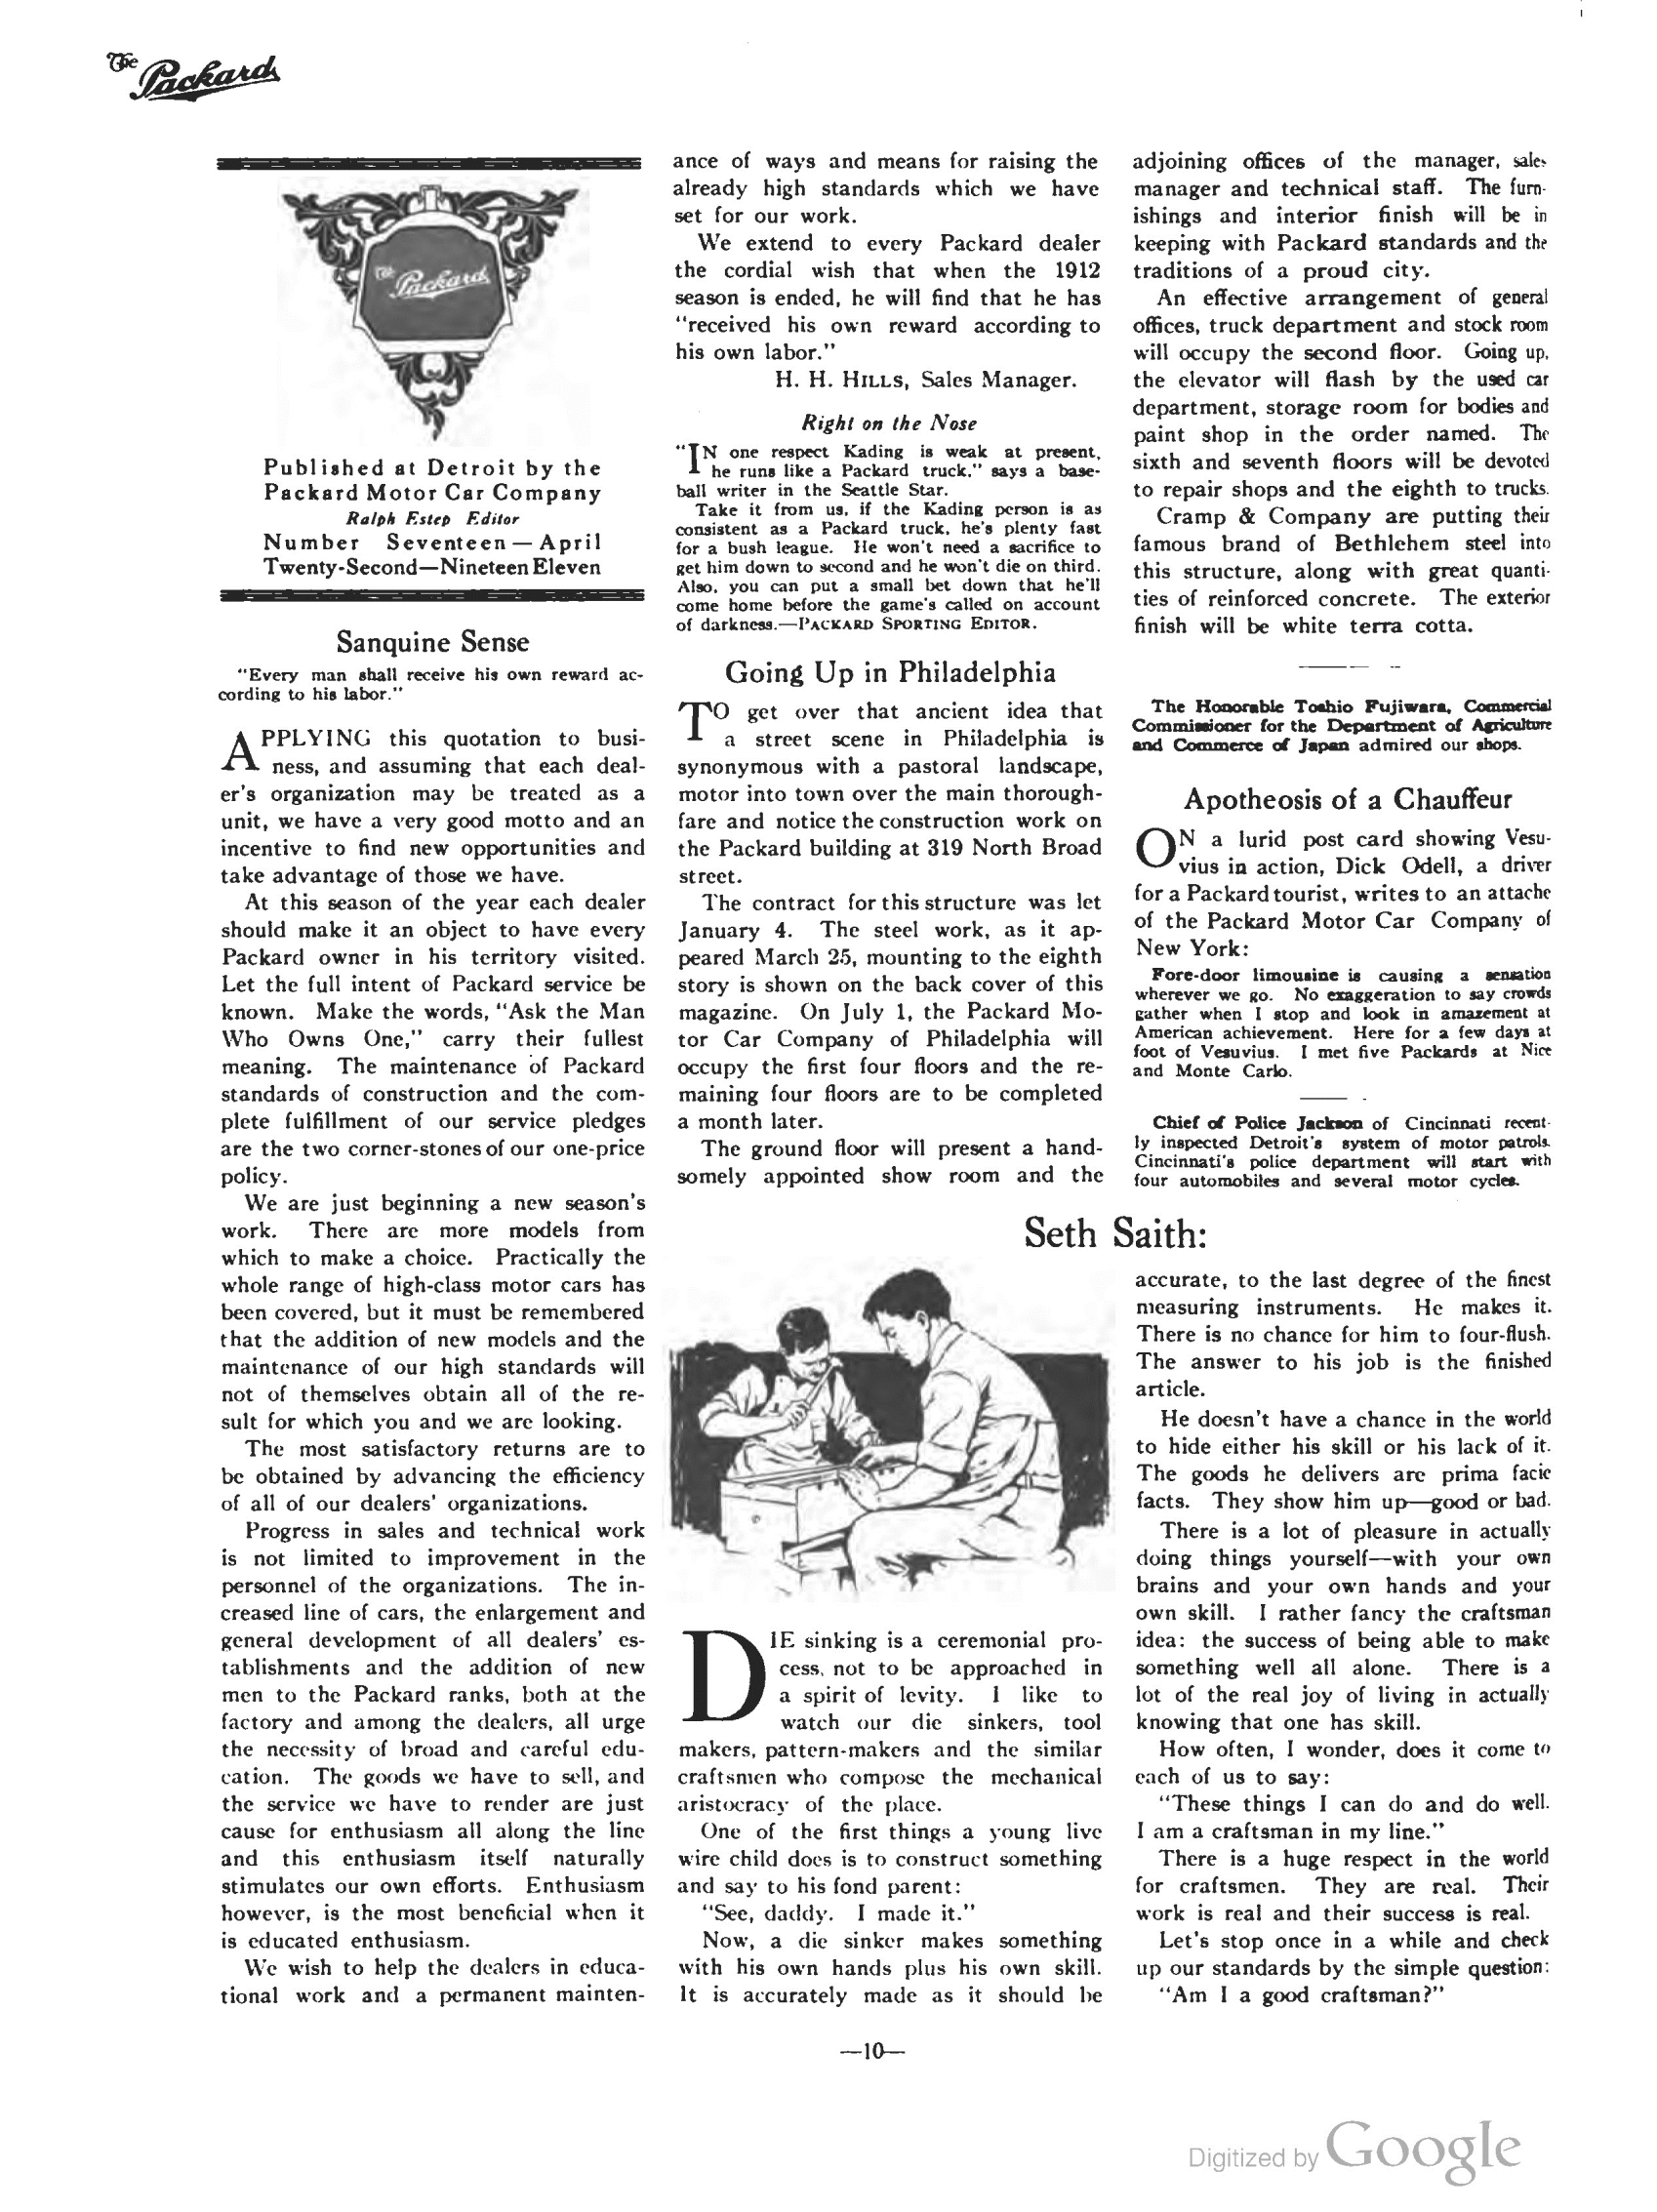 1911_The_Packard_Newsletter-072